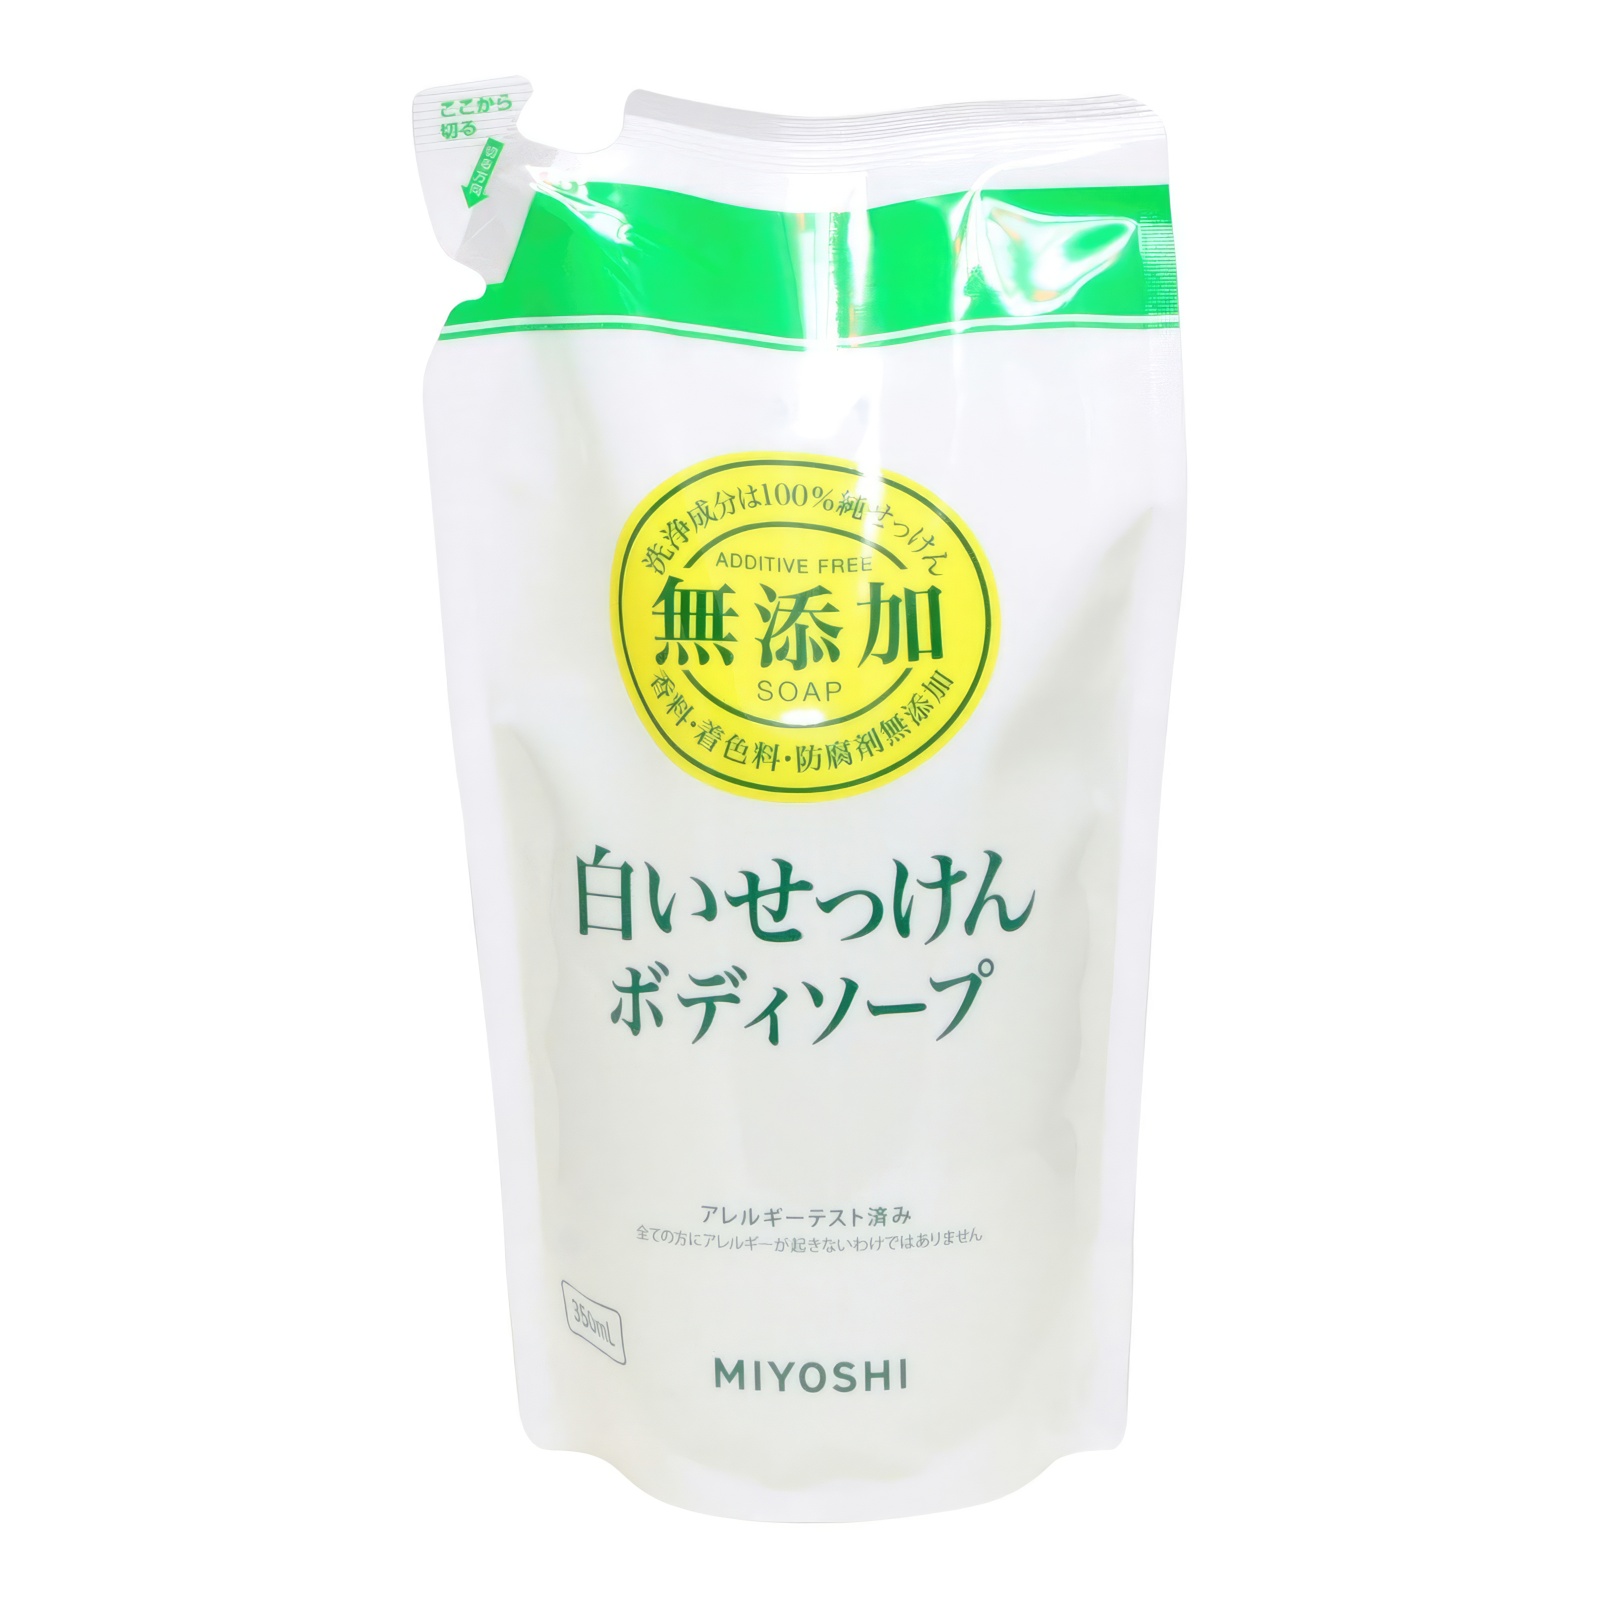 Натуральное жидкое мыло MIYOSHI эко для тела 350 мл з б обас жидкое мыло для тела грейпфрут 300 мл